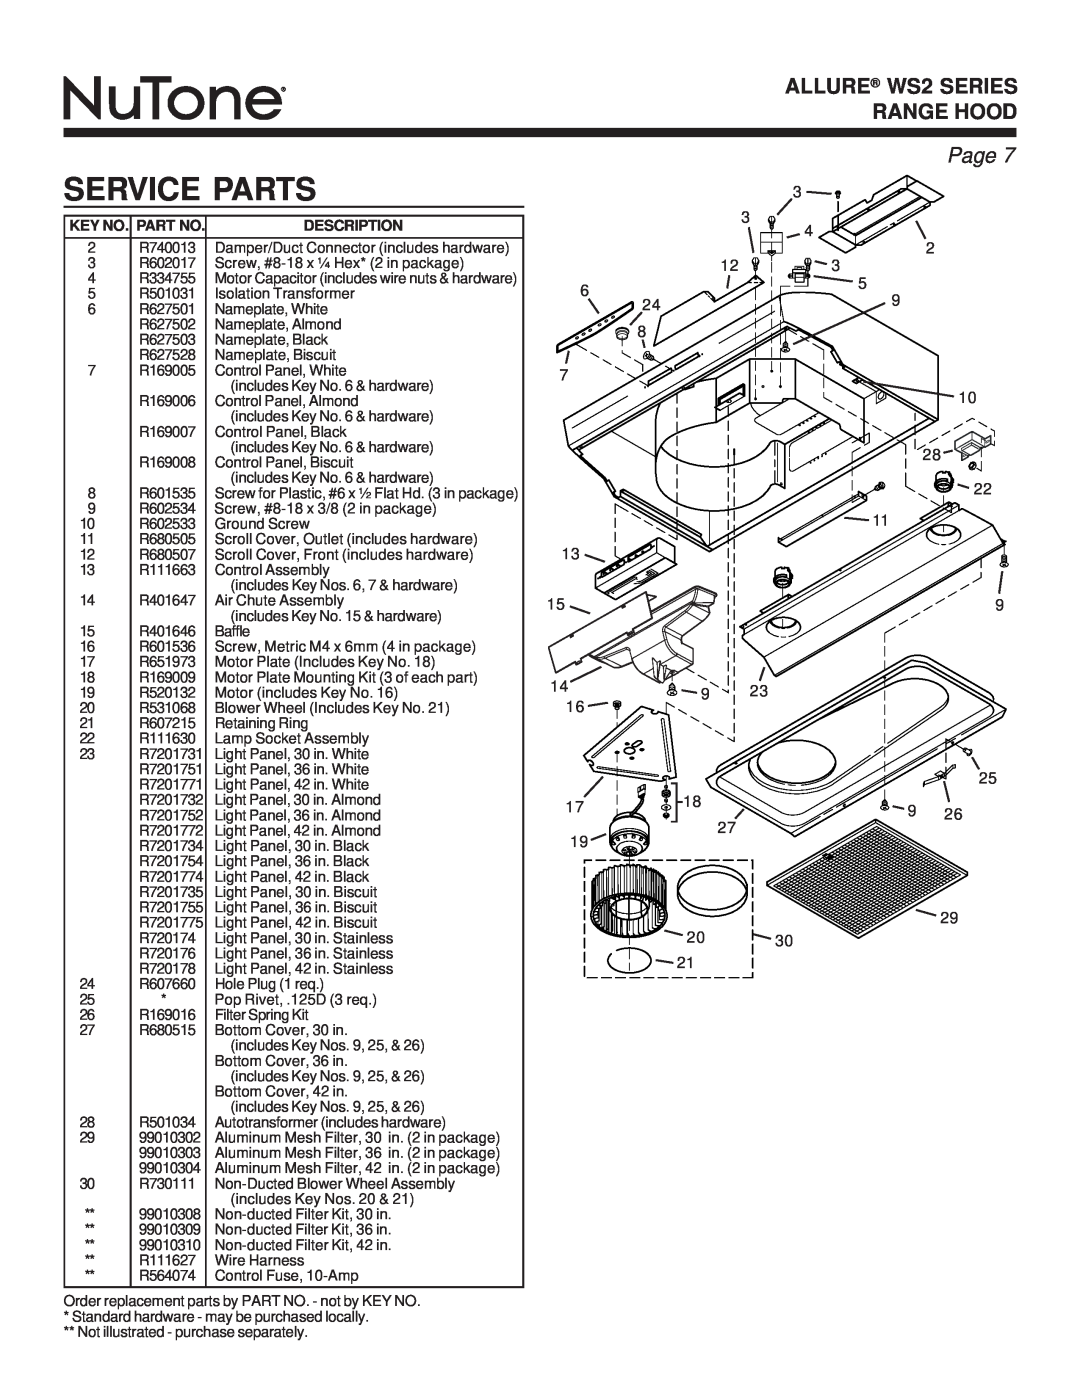 NuTone warranty Service Parts, ALLURE WS2 SERIES RANGE HOOD, Page, Key No. Part No, Description 